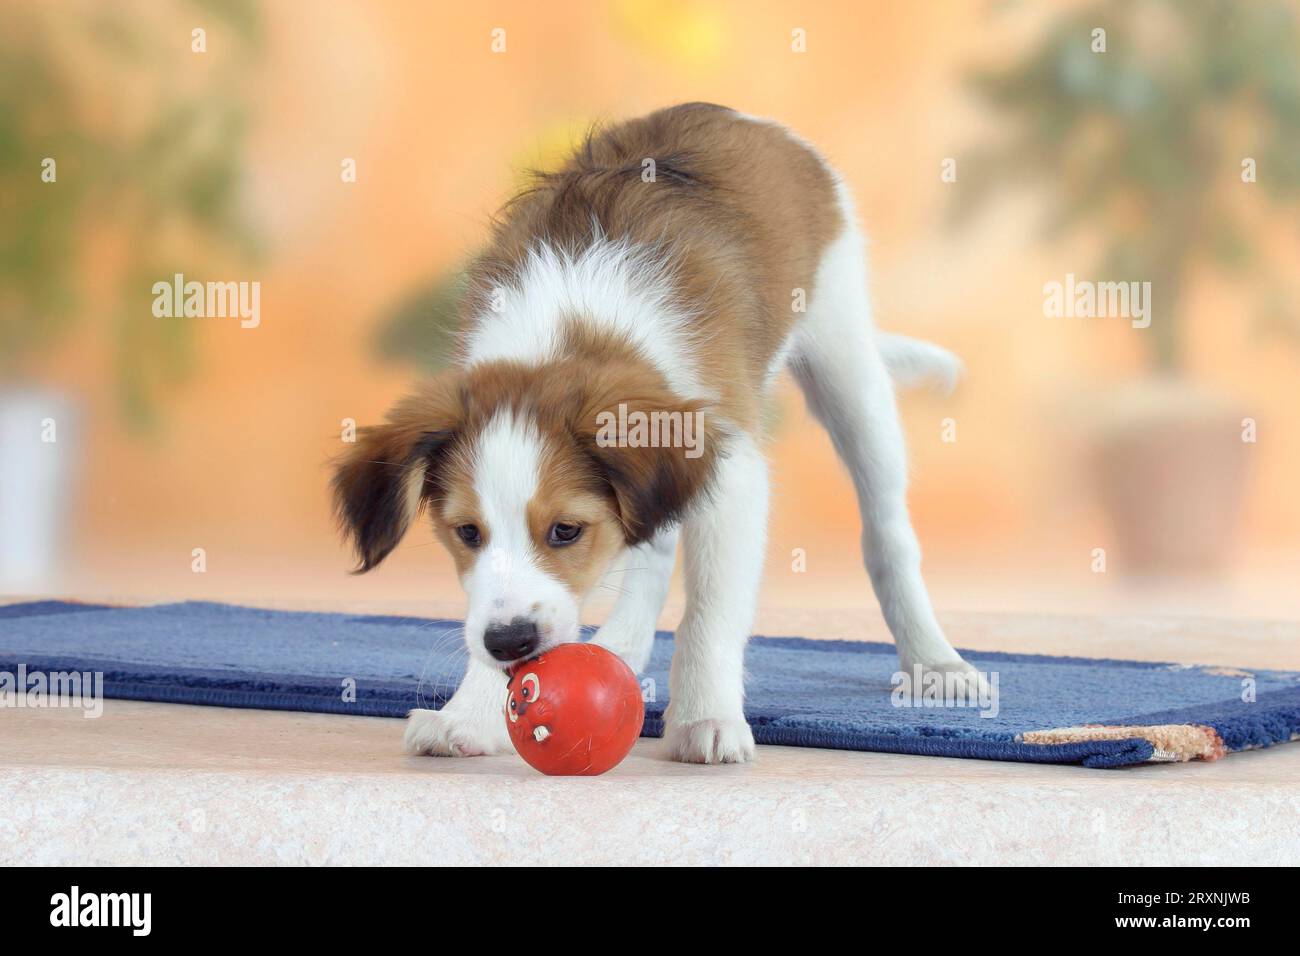 Kooikerhondje, puppy, 3 months, with toys Stock Photo